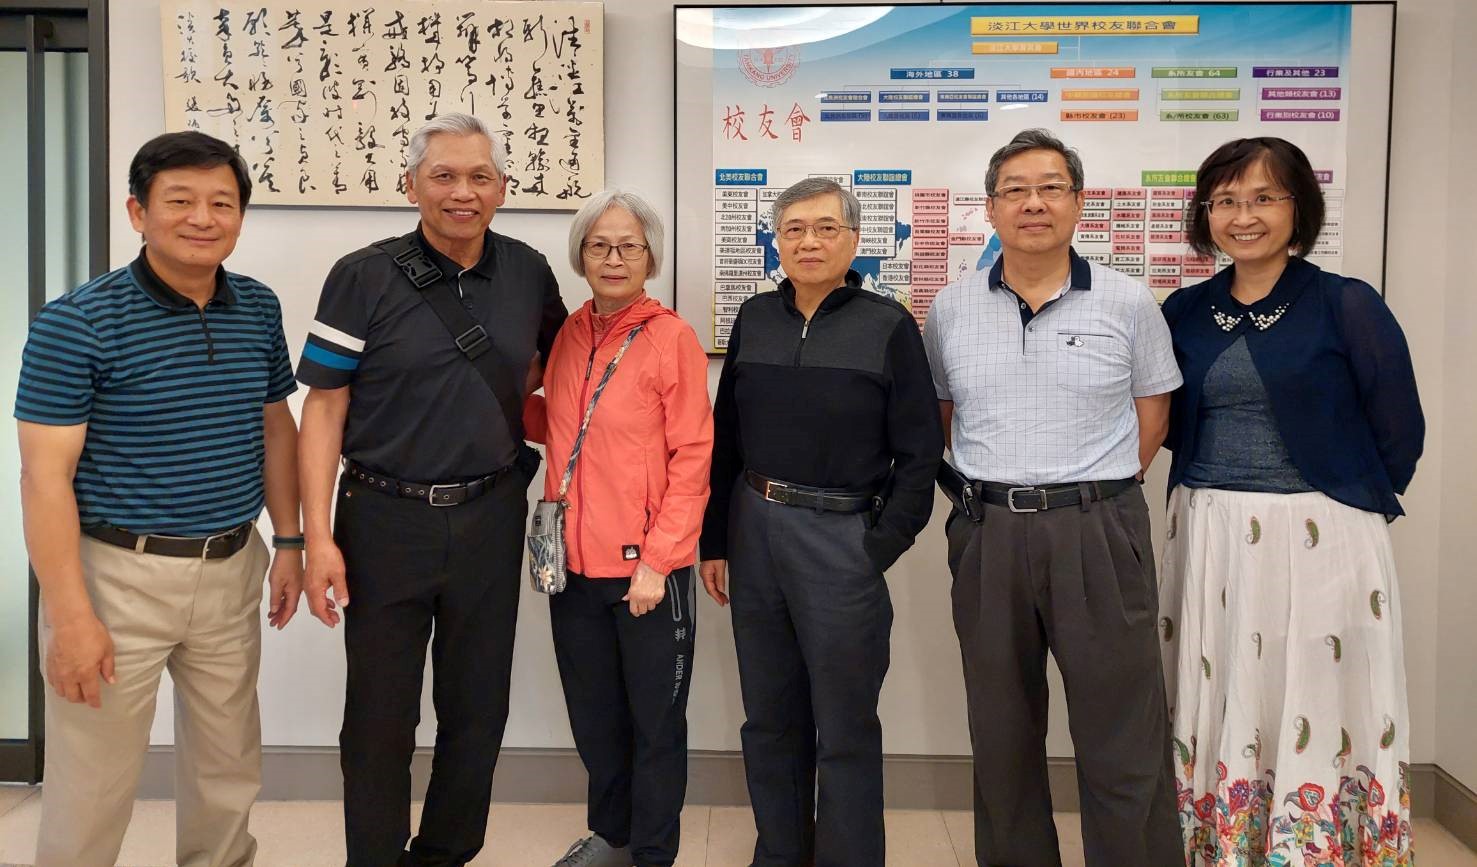 ◎左起为彭春阳执行长、陈振堂学长夫妇、郭丰学长、林宏昌学长、郑惠兰秘书